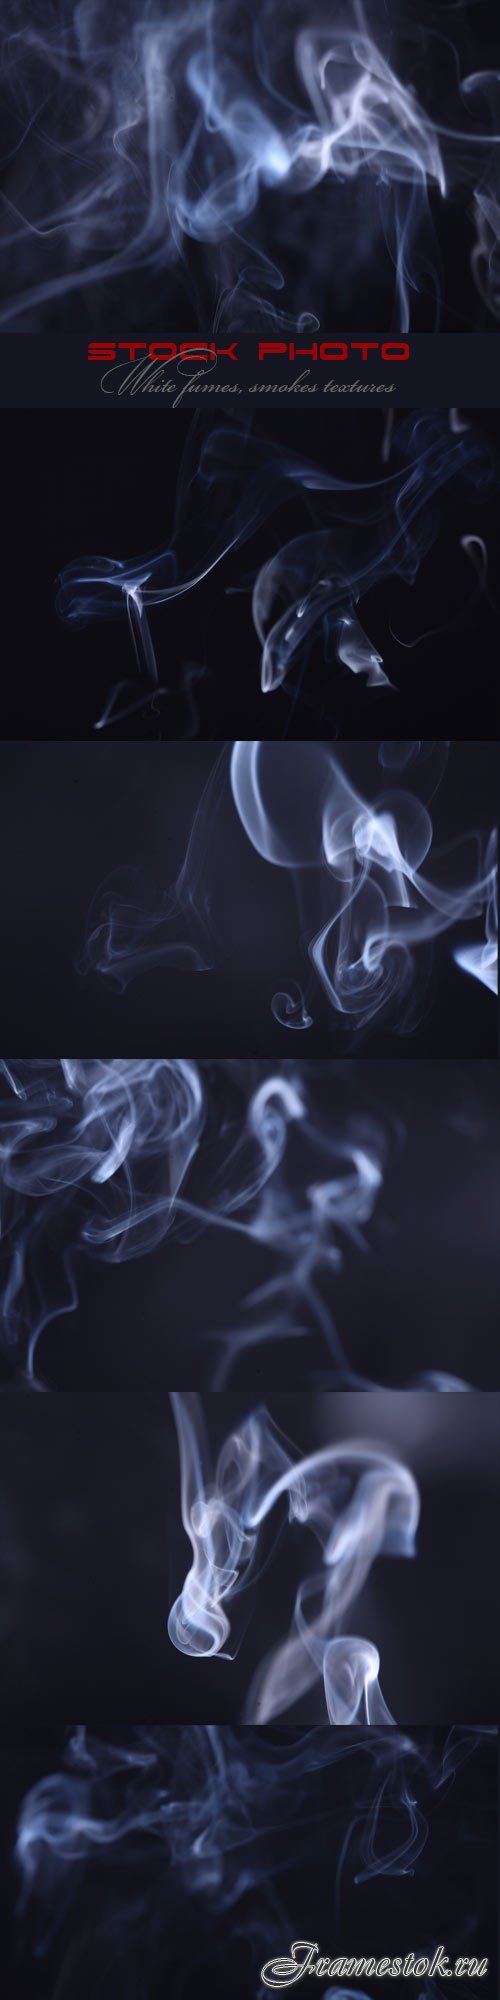 White fumes, smokes textures